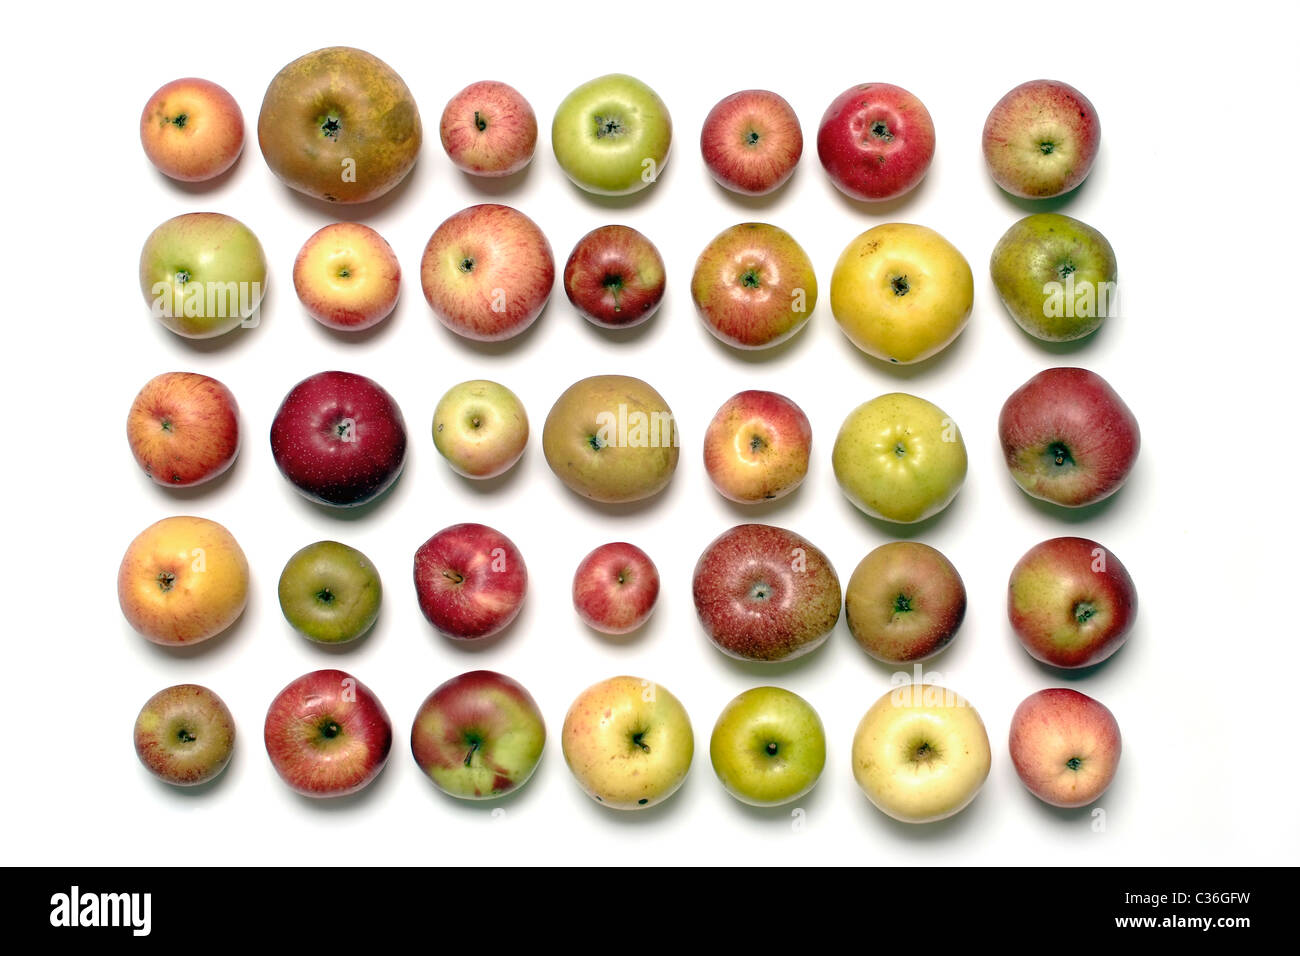 36+ Apfelsorten uebersicht mit bildern , Überblick über verschiedene alte Apfelsorten Stockfotografie Alamy